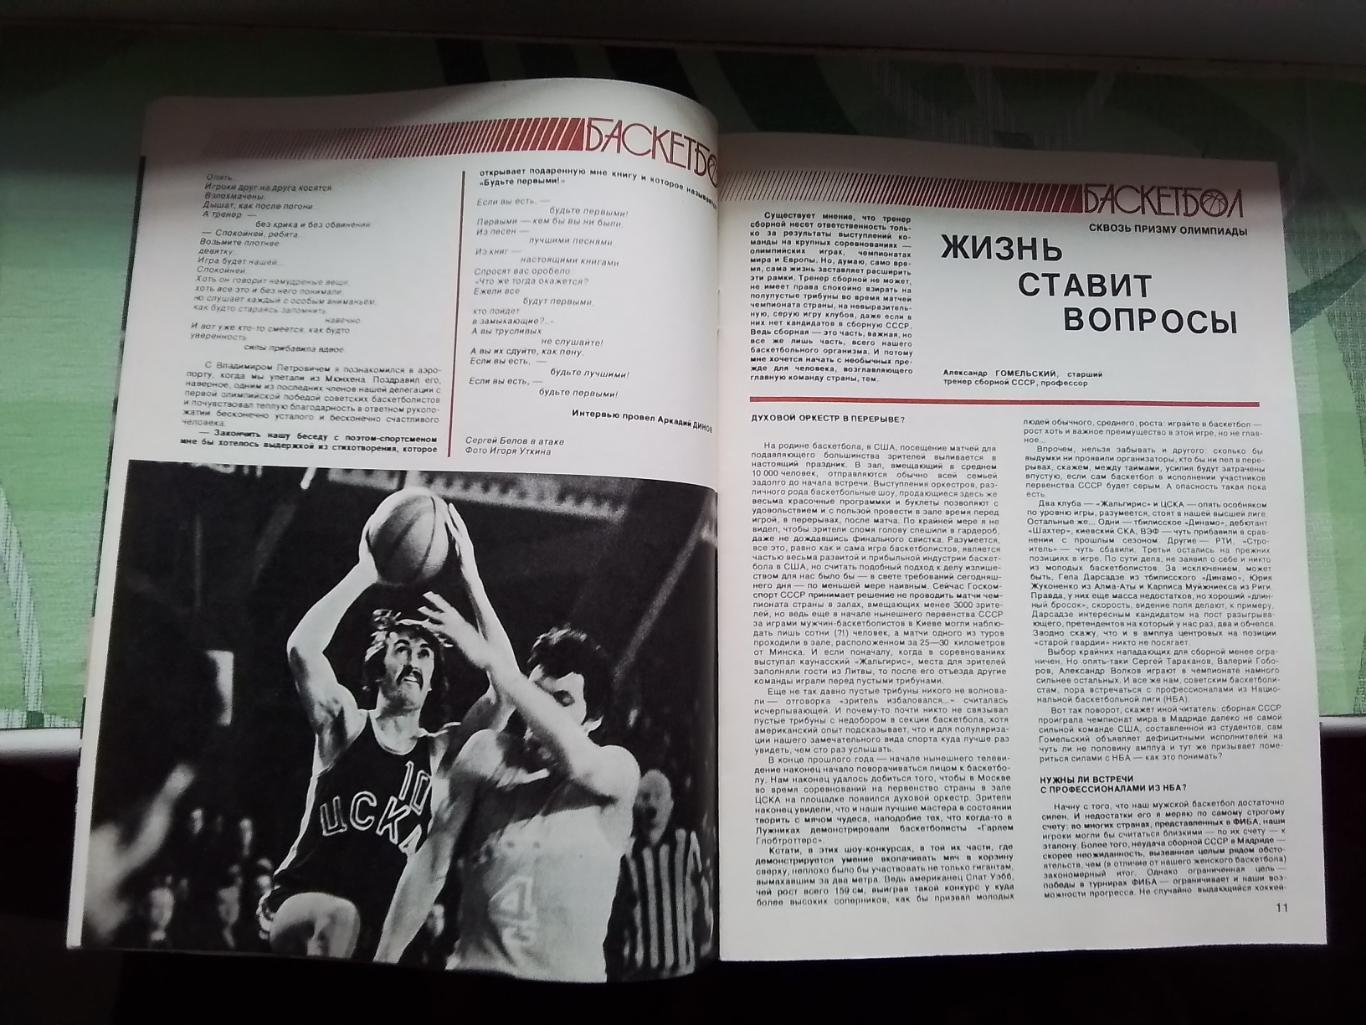 Журнал Спортивные игры 1987 3 Каунас обладатель межконт Кубка М Якушин ДМ - НБА 5